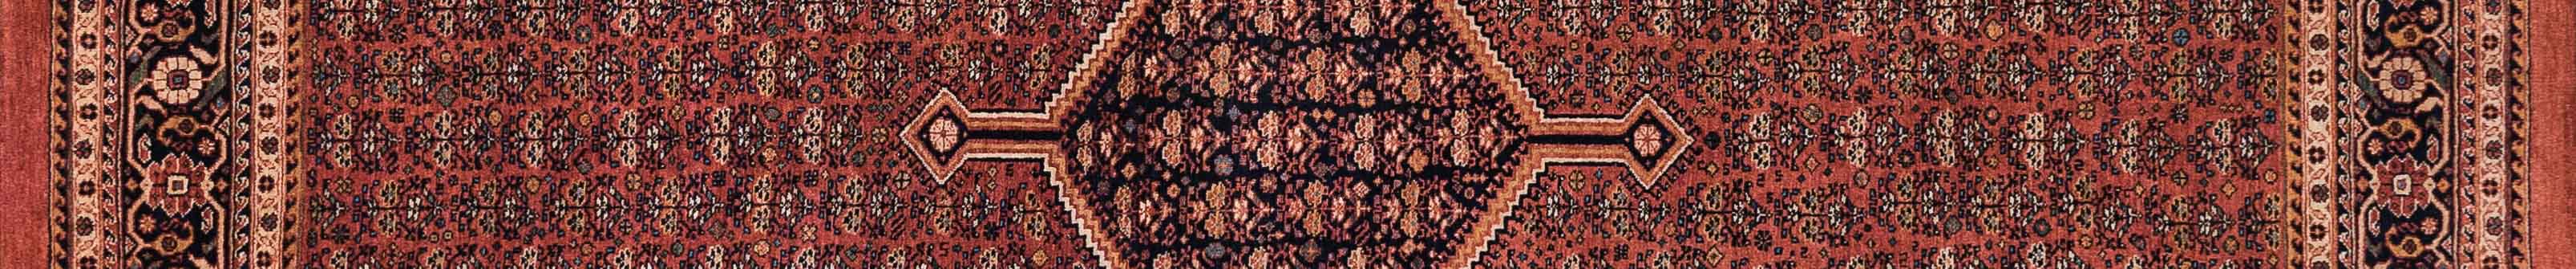 Qashqai Persian Carpet Rug N1Carpet Canada Montreal Tapis Persan 7500